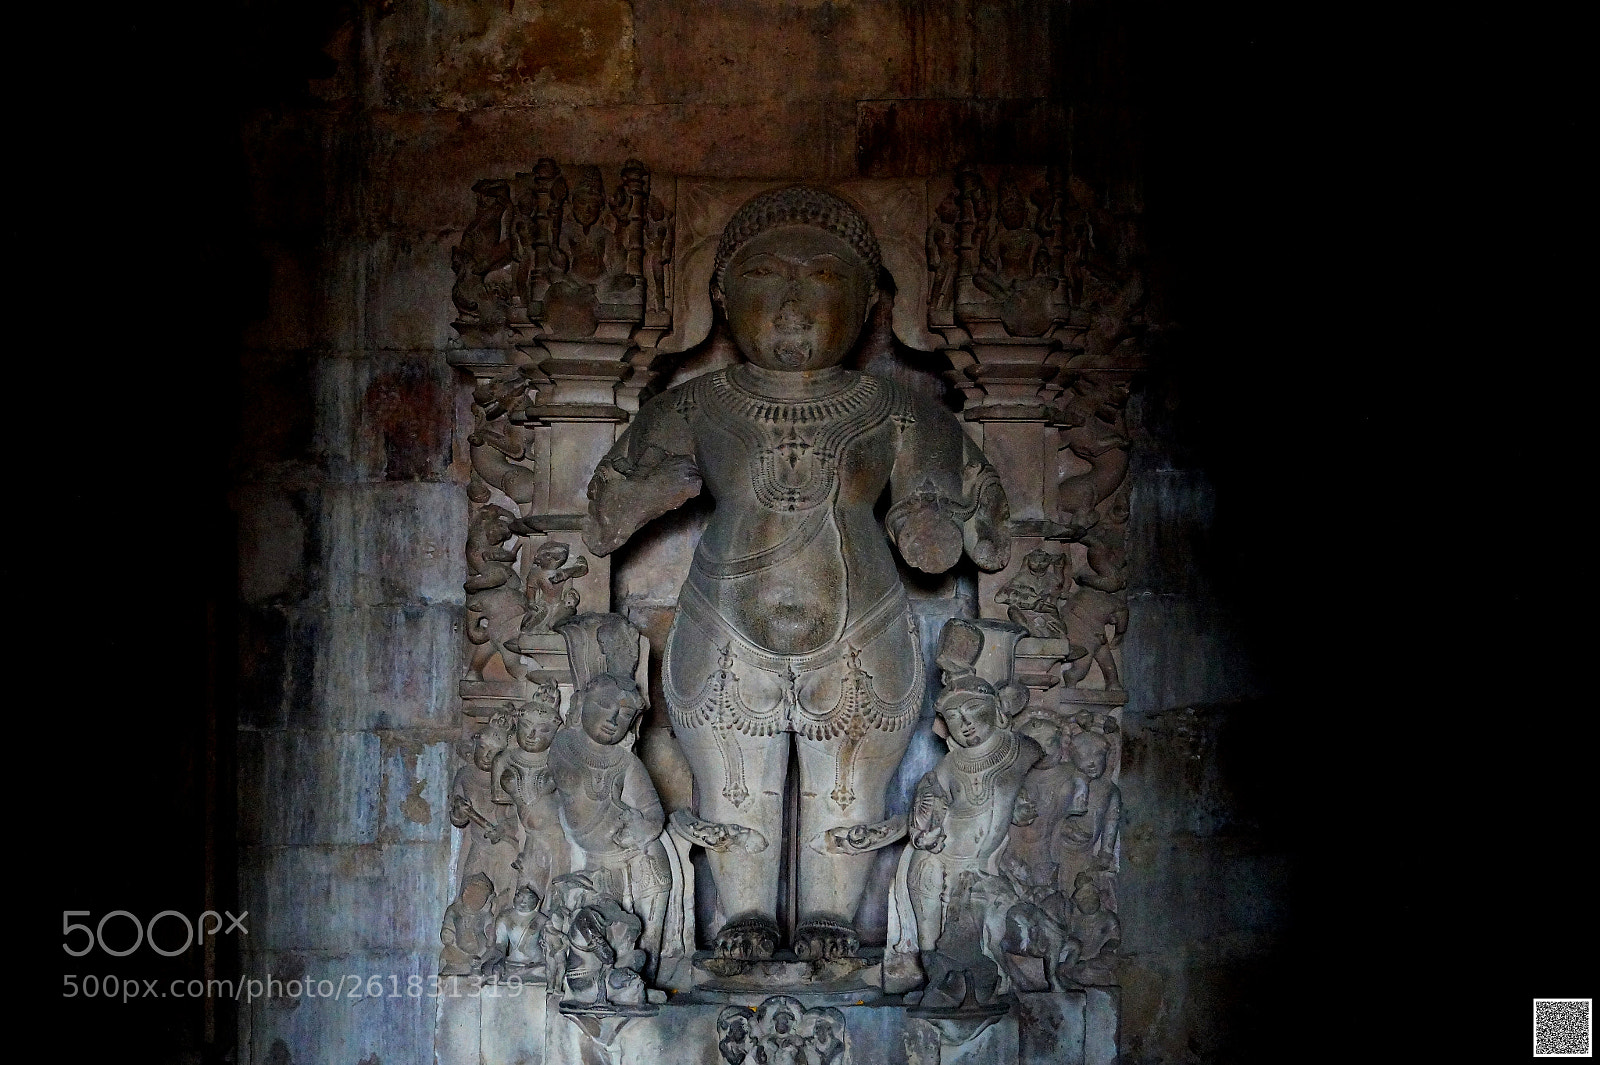 Sony SLT-A58 sample photo. Jain temple khajuraho madhya photography